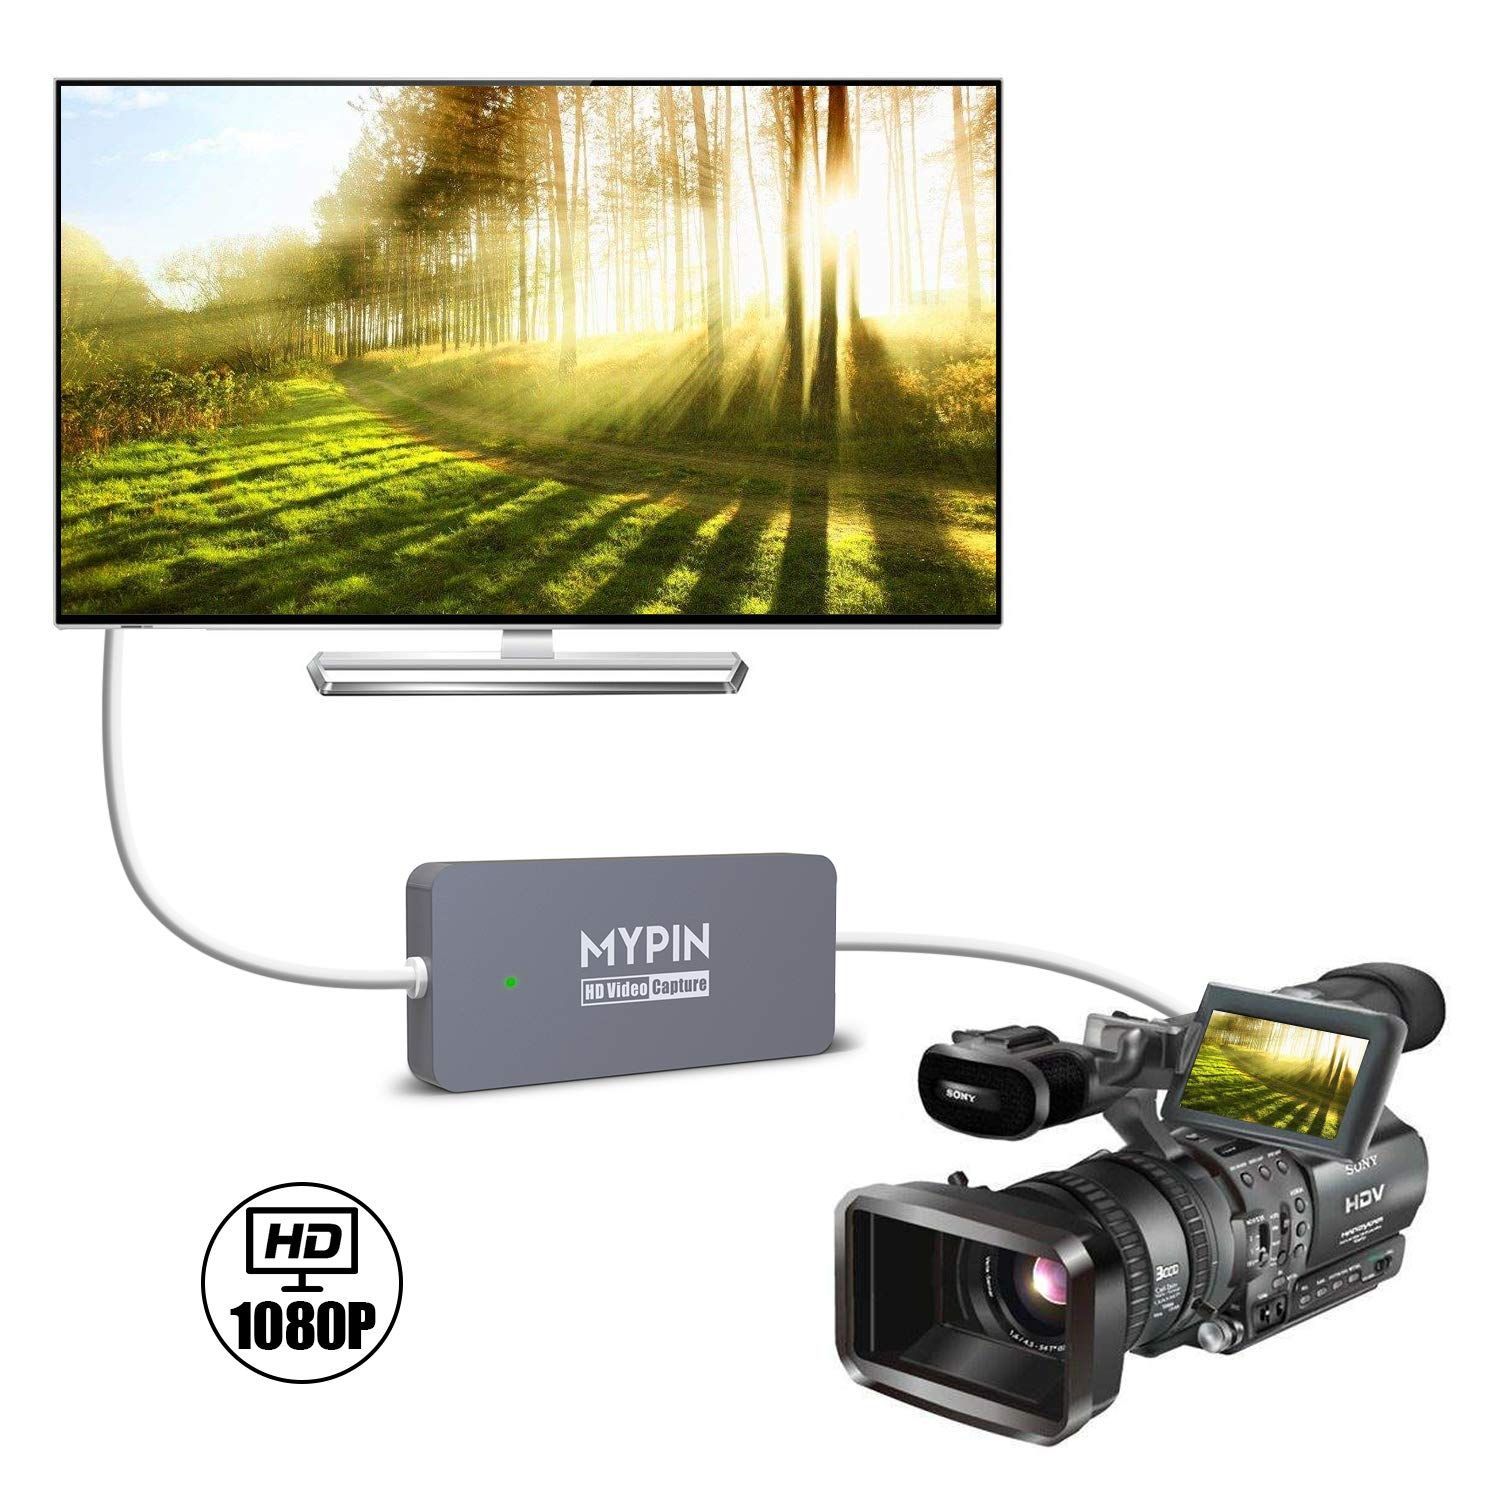 取寄せ発送品 MYPIN HDMIビデオキャプチャー 1080p | ebot.edac.co.in